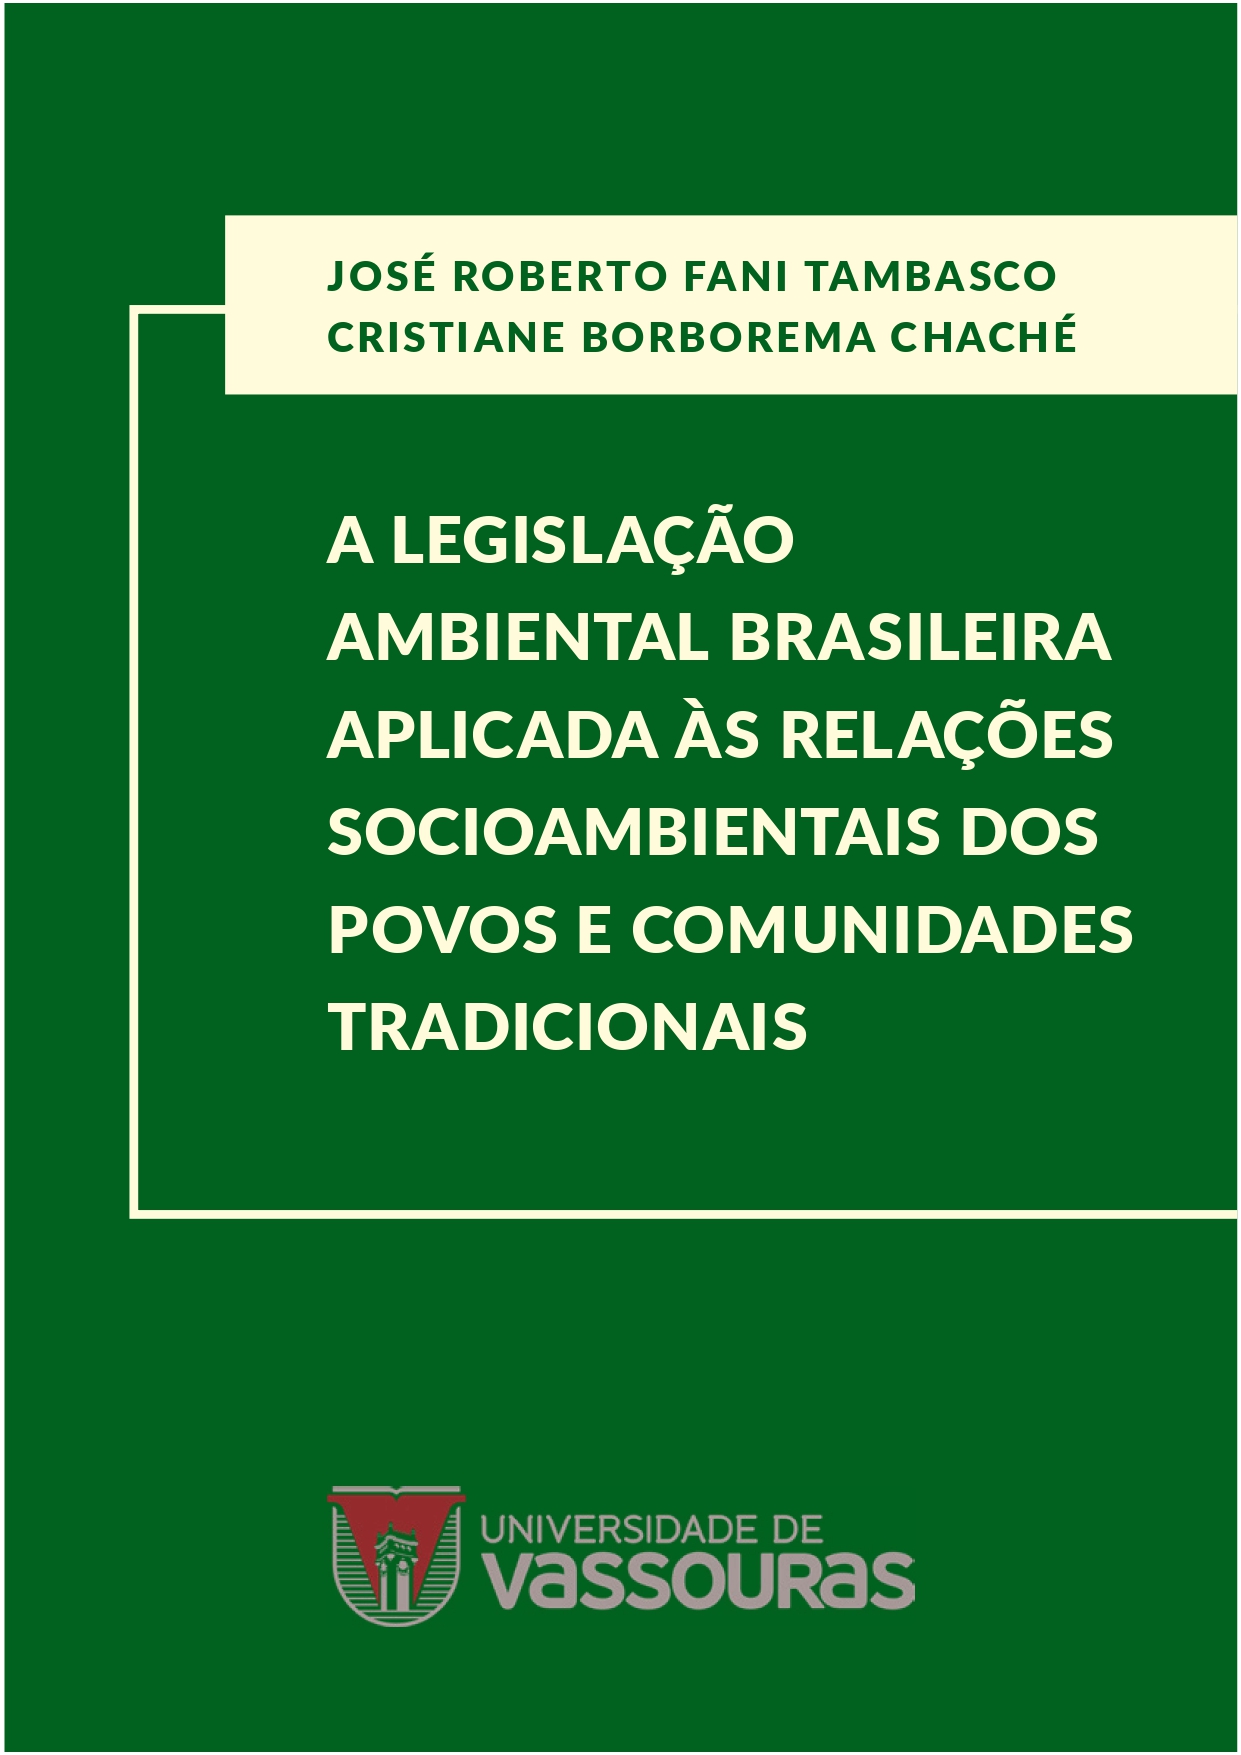 					View 2021: A legislação ambiental brasileira aplicada às relações socioambientais dos povos e comunidades tradicionais
				